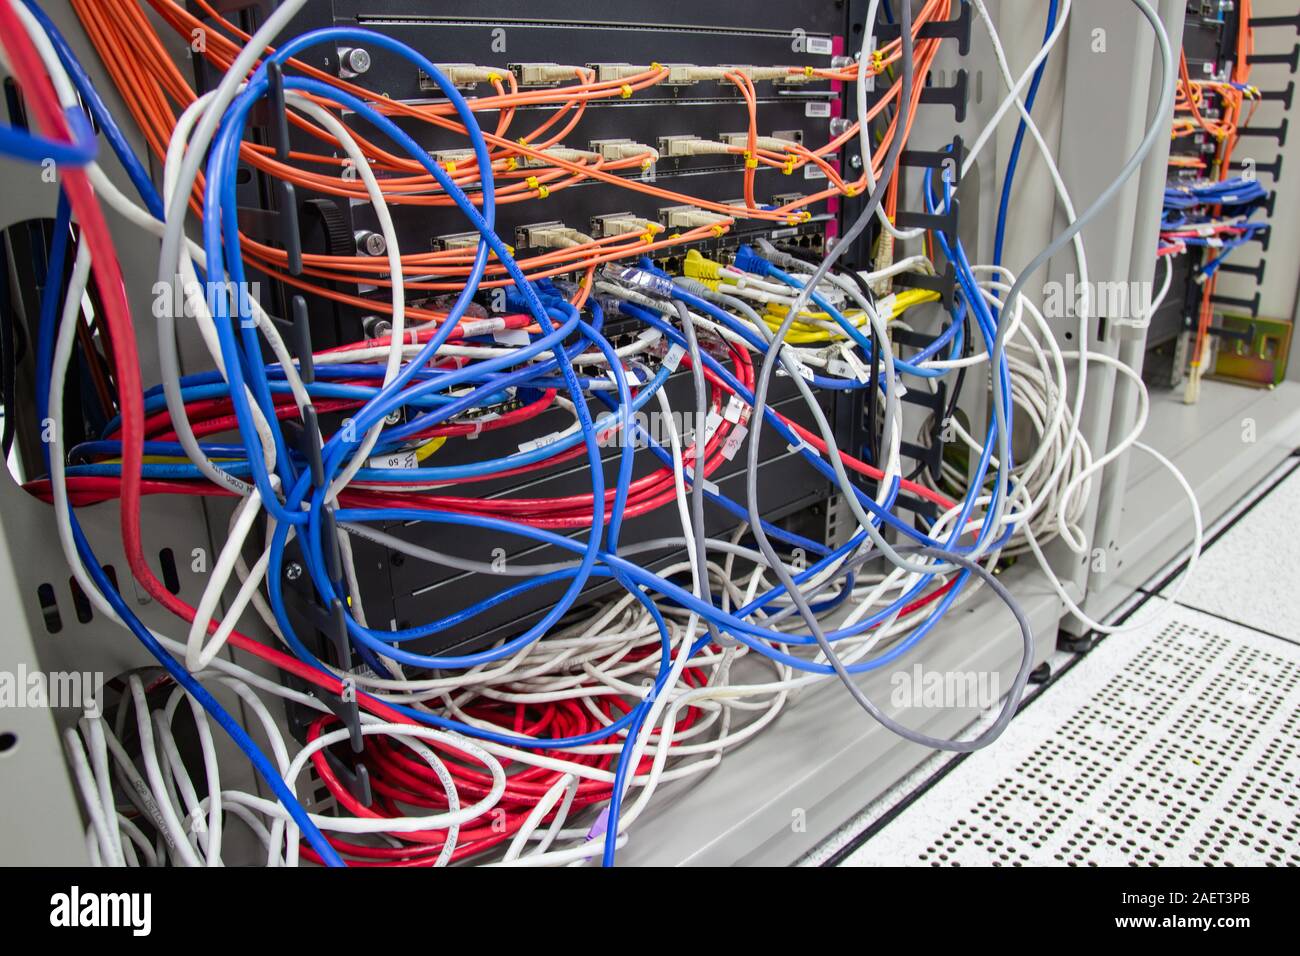 Bangkok Thailand: - Dec 10, 2019: - Kabel-Netzwerk im Serverraum Kabelsalat von Schlecht verlegtes Kabel Konzept organisierten Verkabelung im Serverraum Stockfoto